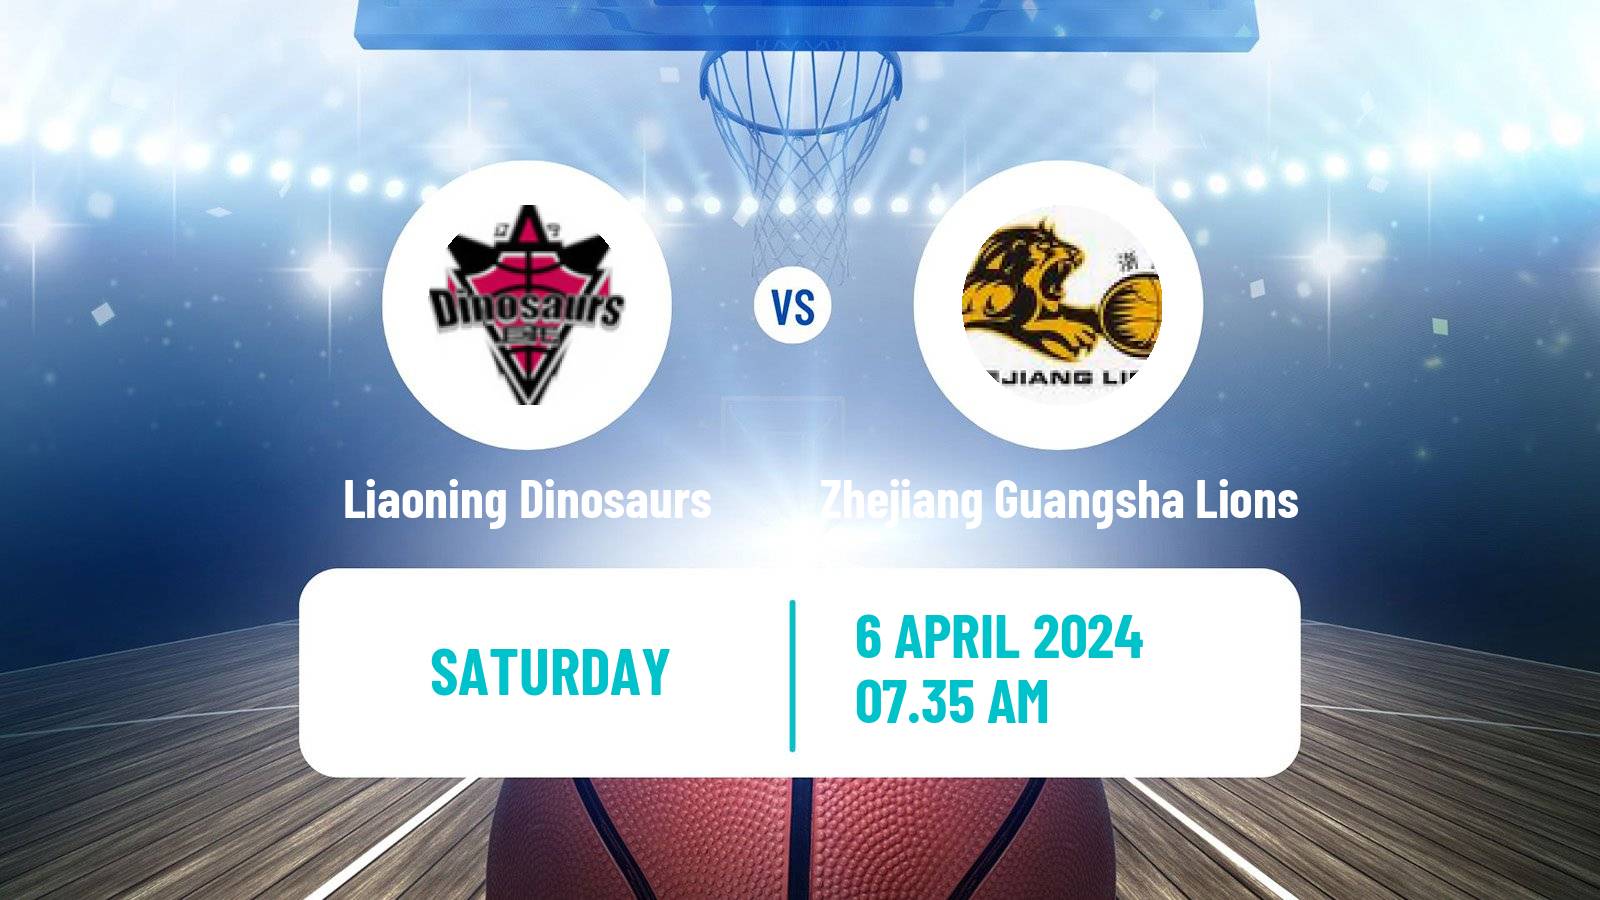 Basketball CBA Liaoning Dinosaurs - Zhejiang Guangsha Lions